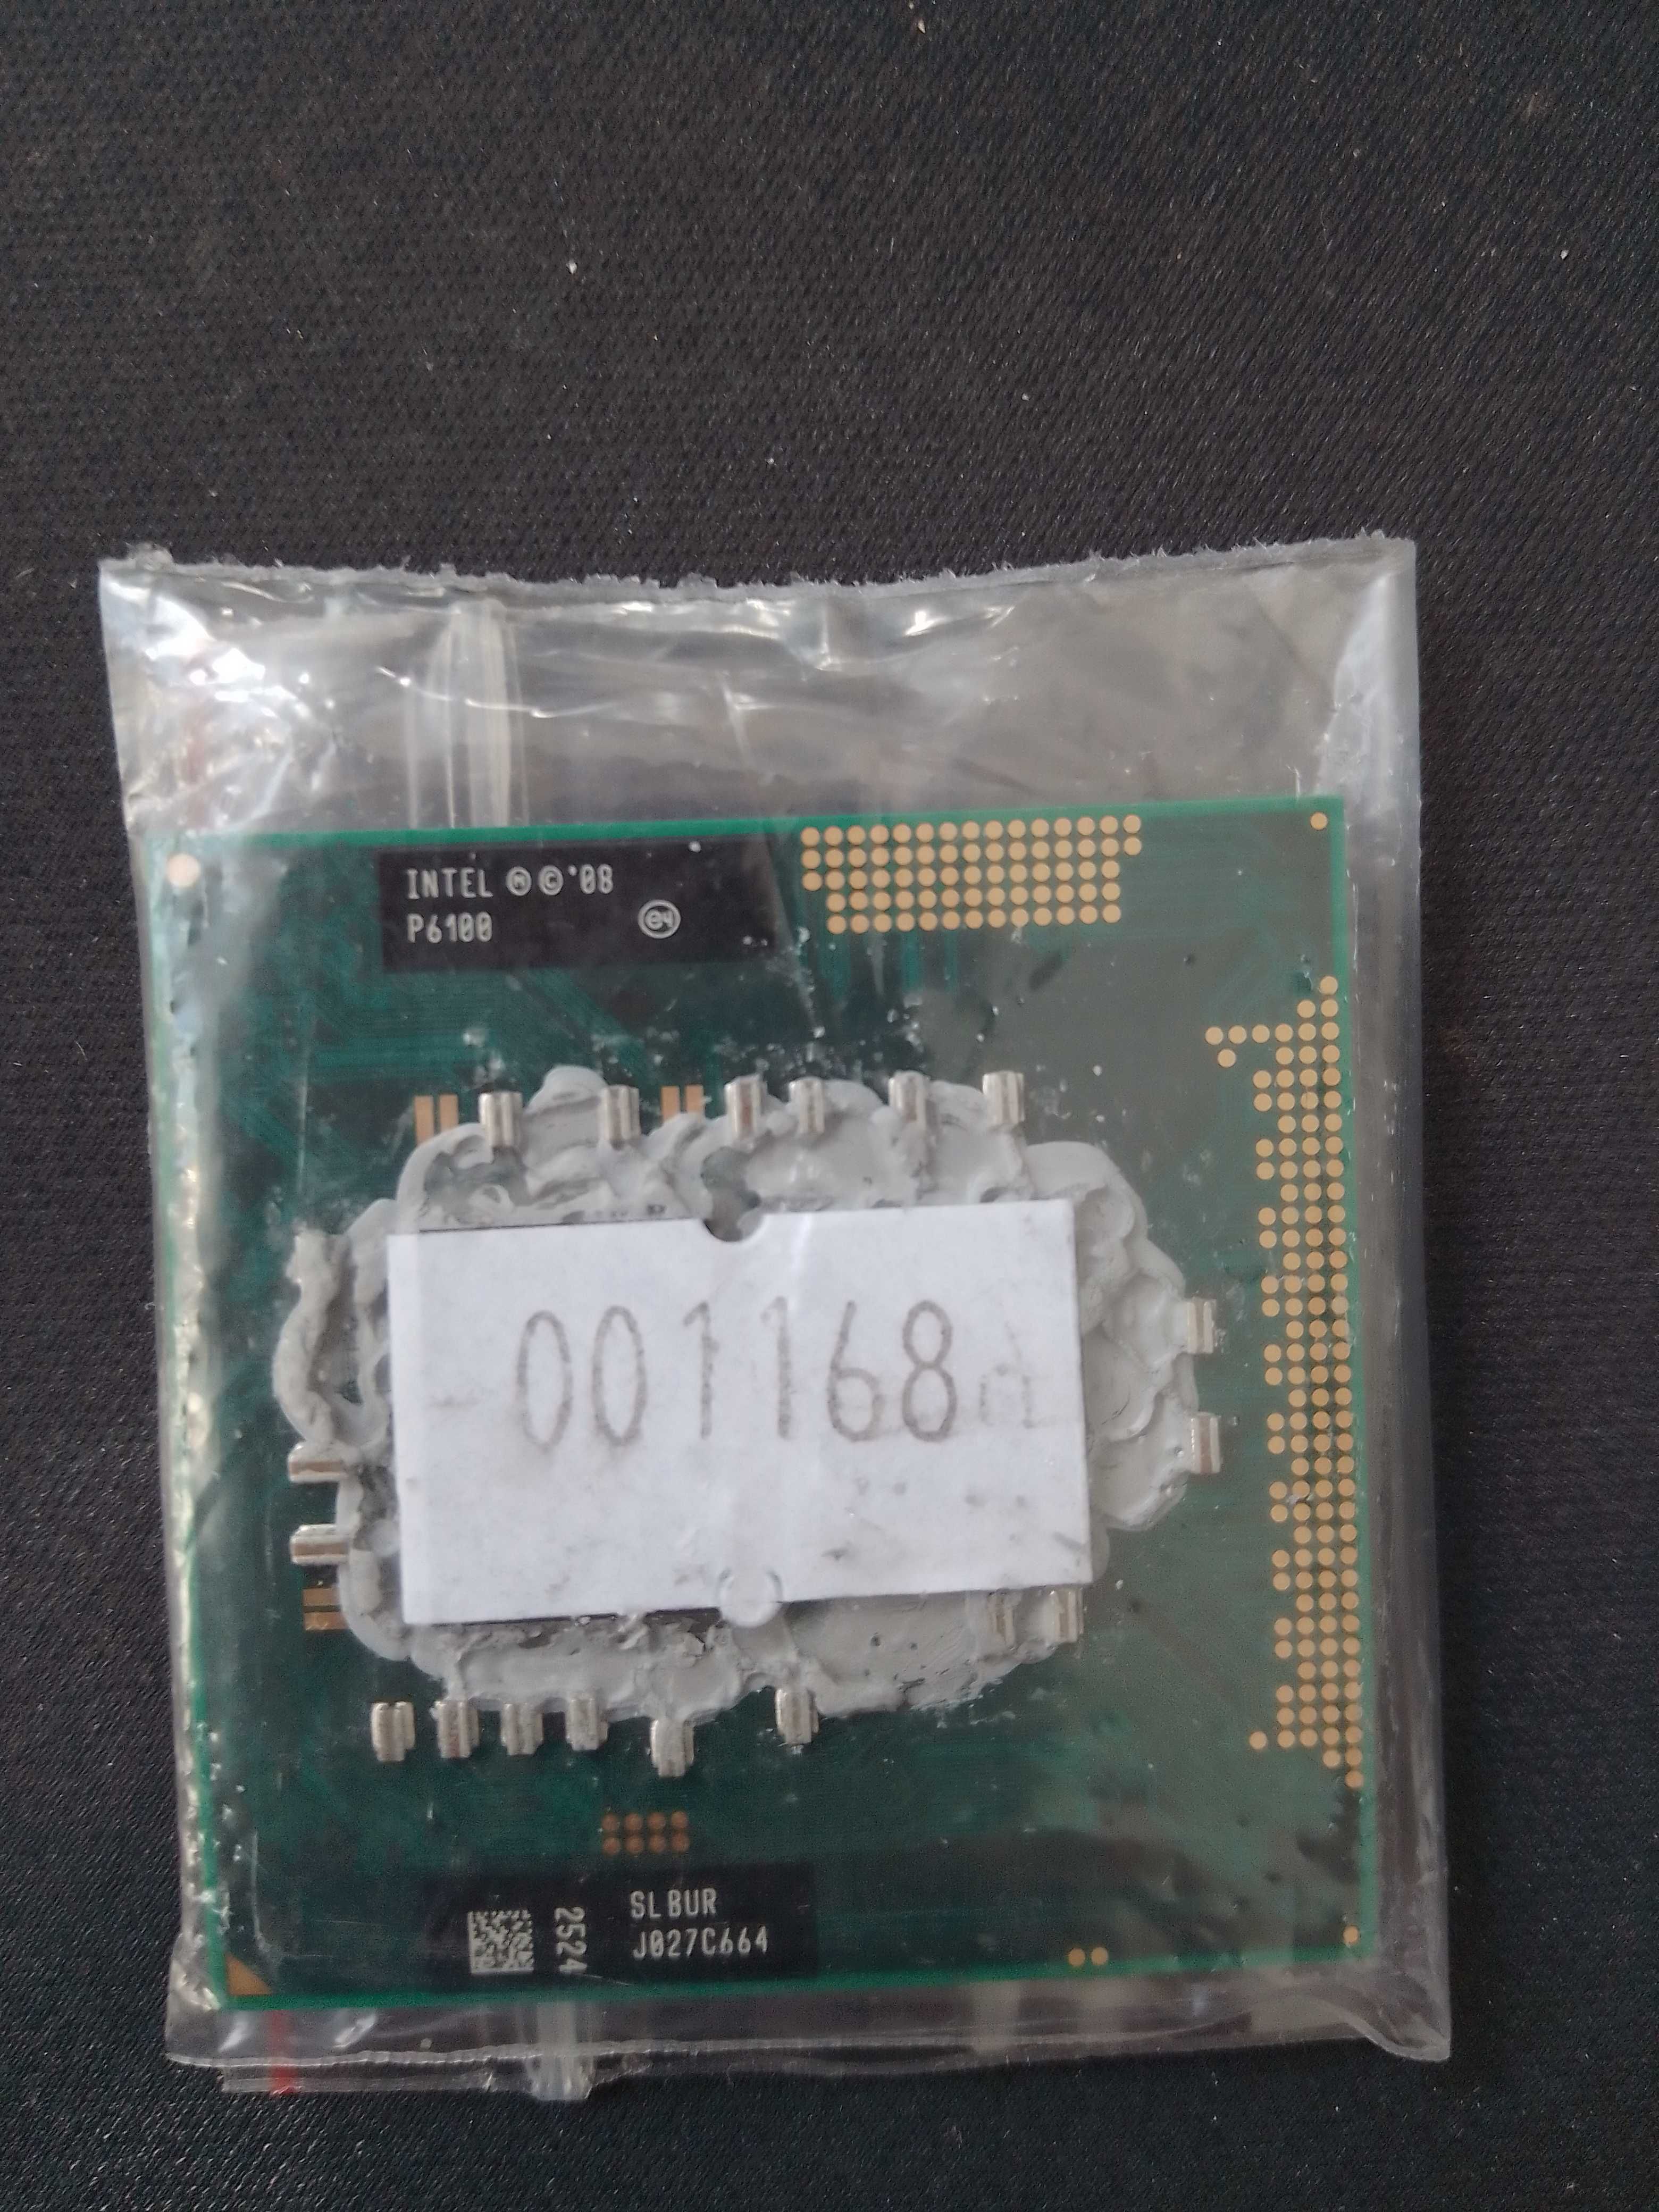 Procesor Intel Pentium P6100 2.00 GHz (001168)